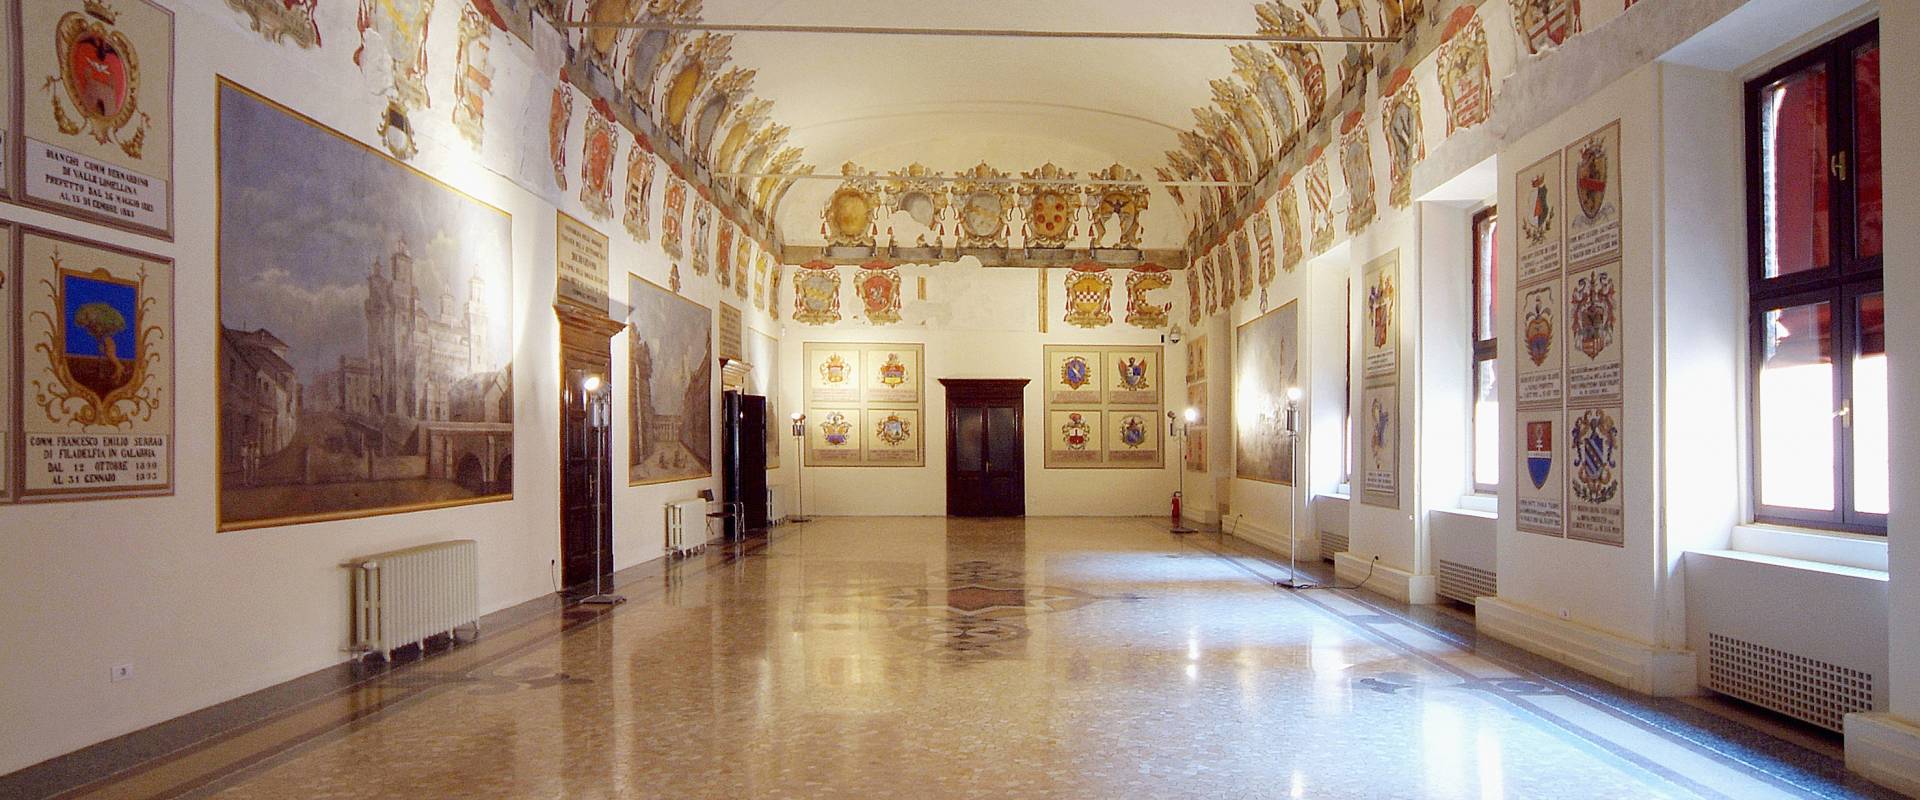 Castello Estense. Sala degli Stemmi foto di baraldi